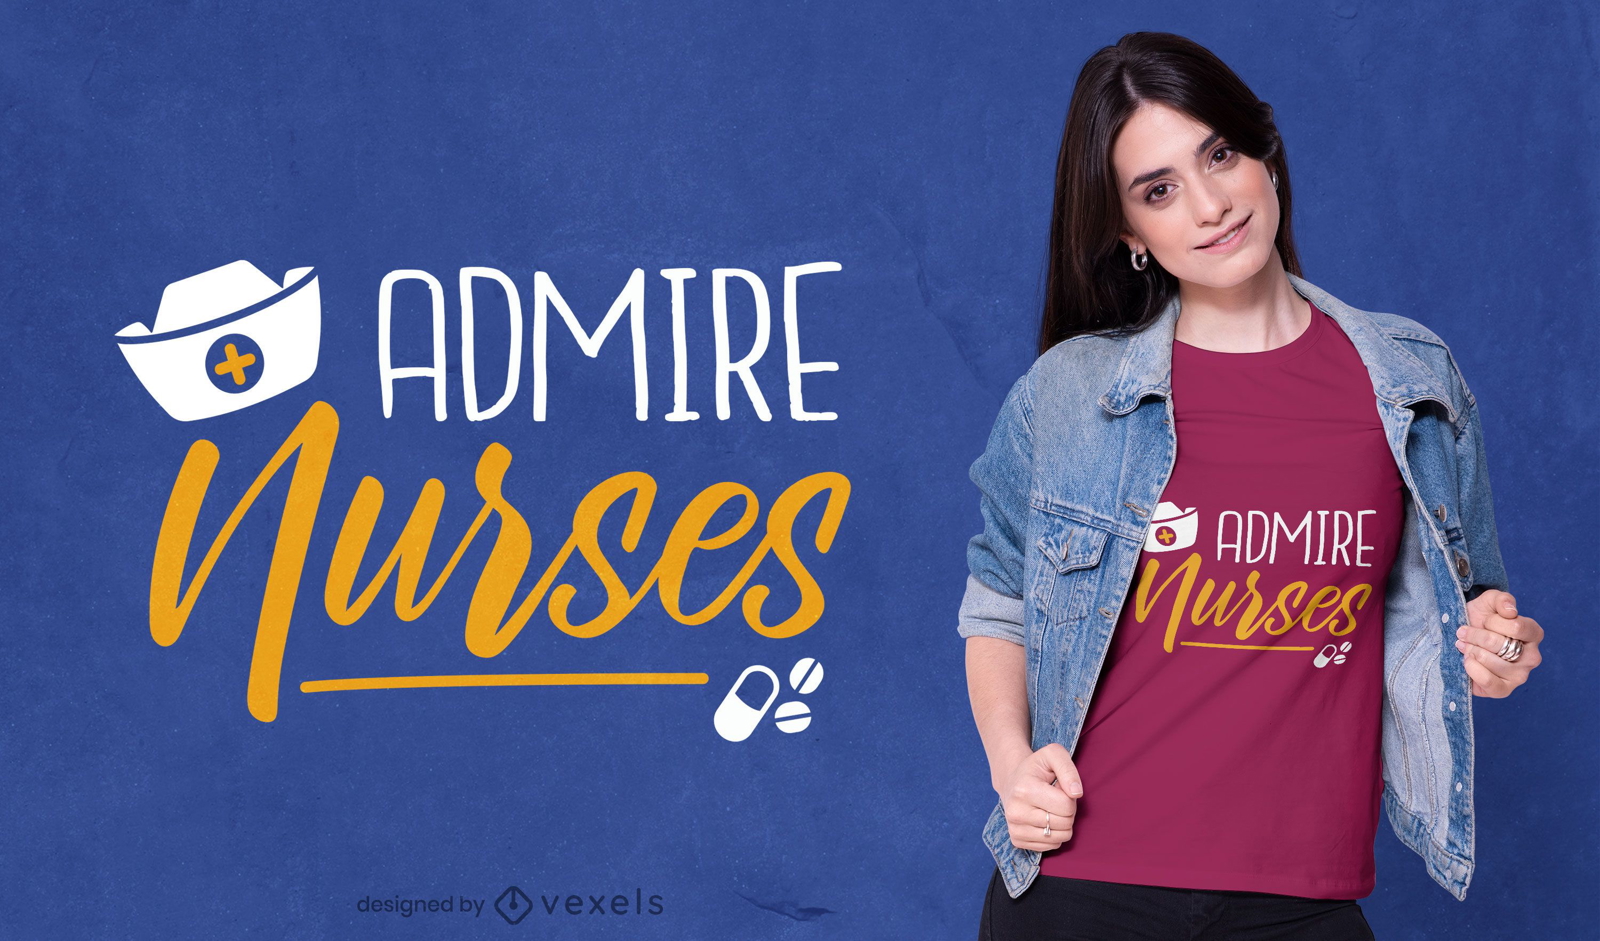 Admira el diseño de la camiseta de las enfermeras.